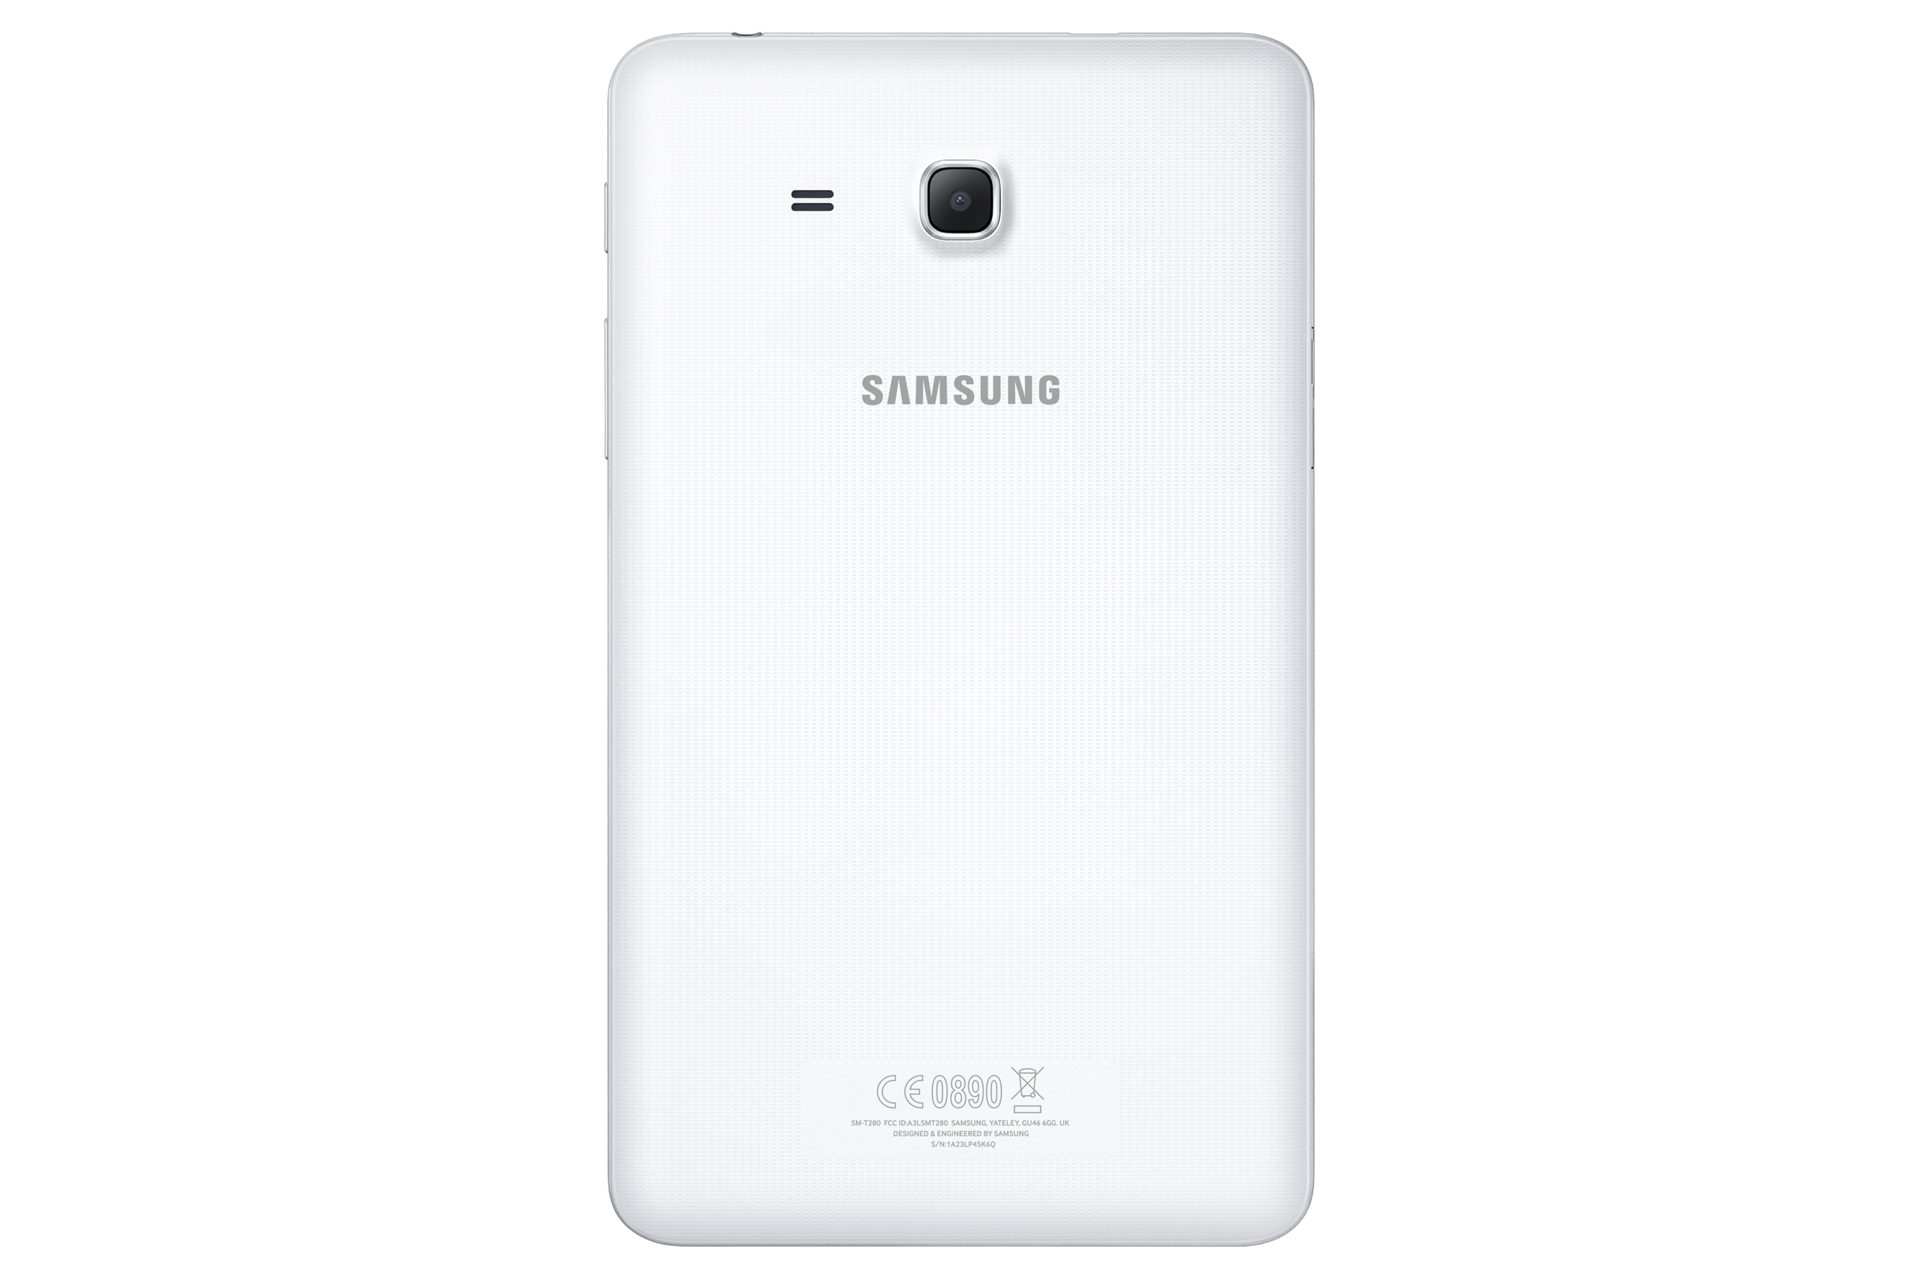 Samsung Galaxy Tab Pro 10.1 Wi-Fi - Fiche technique 